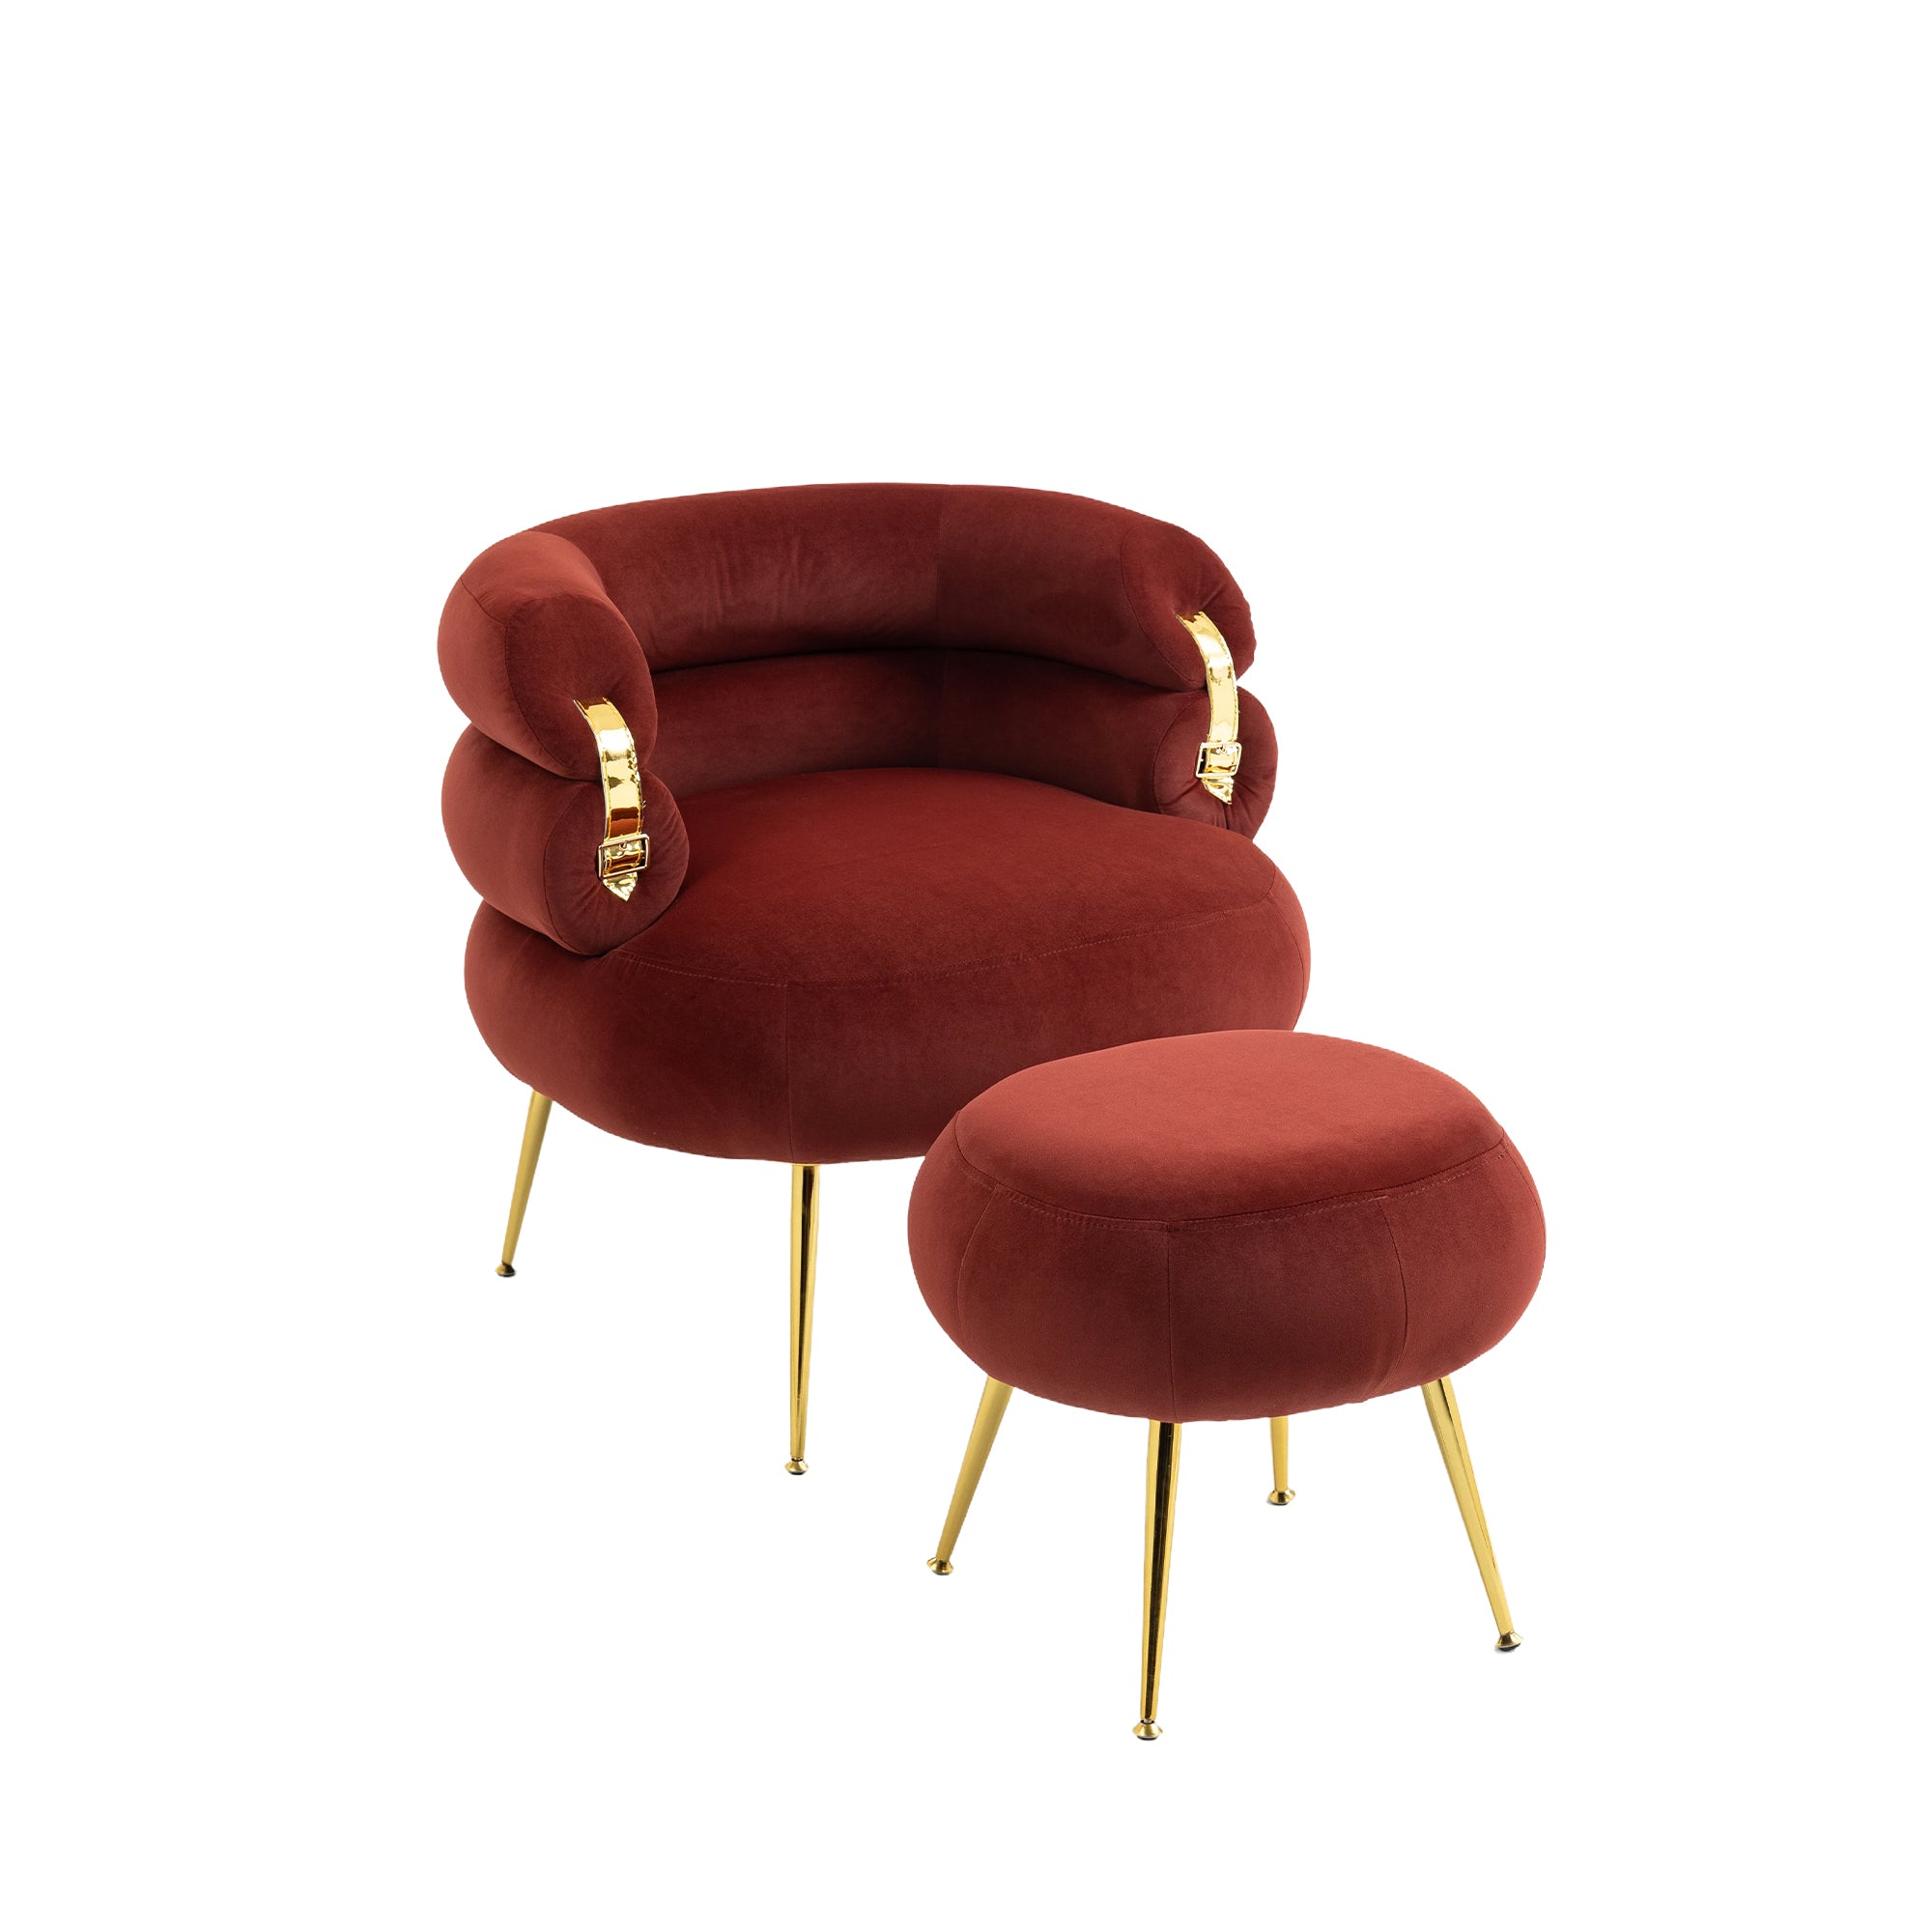 COOLMORE Velvet Accent Chair Modern Upholstered wine red-velvet